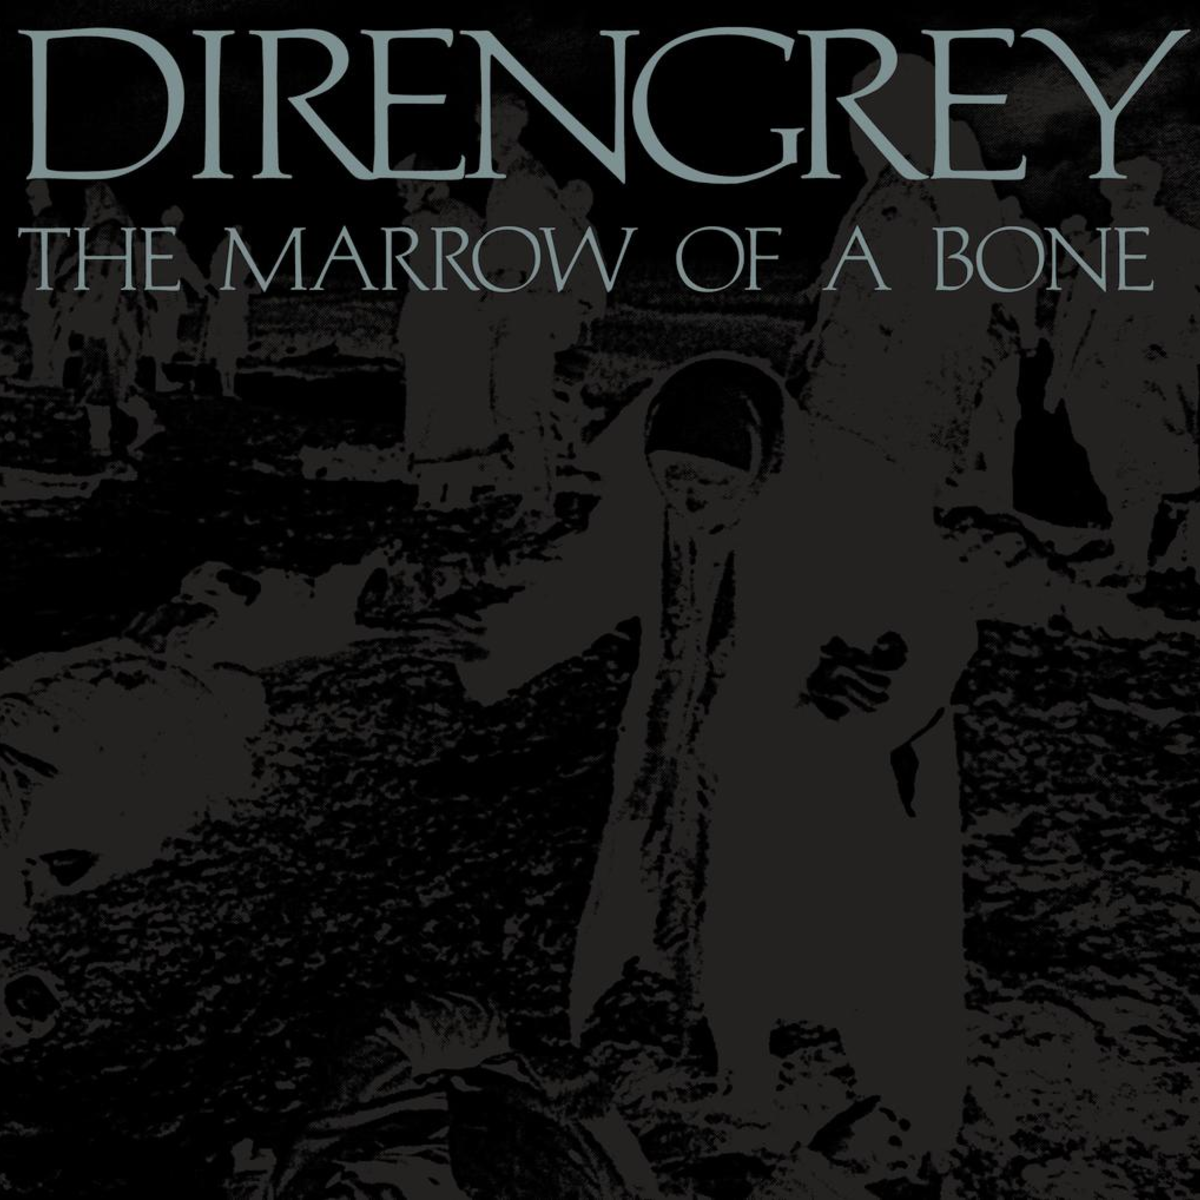 Dir en grey - The Marrow of a Bone